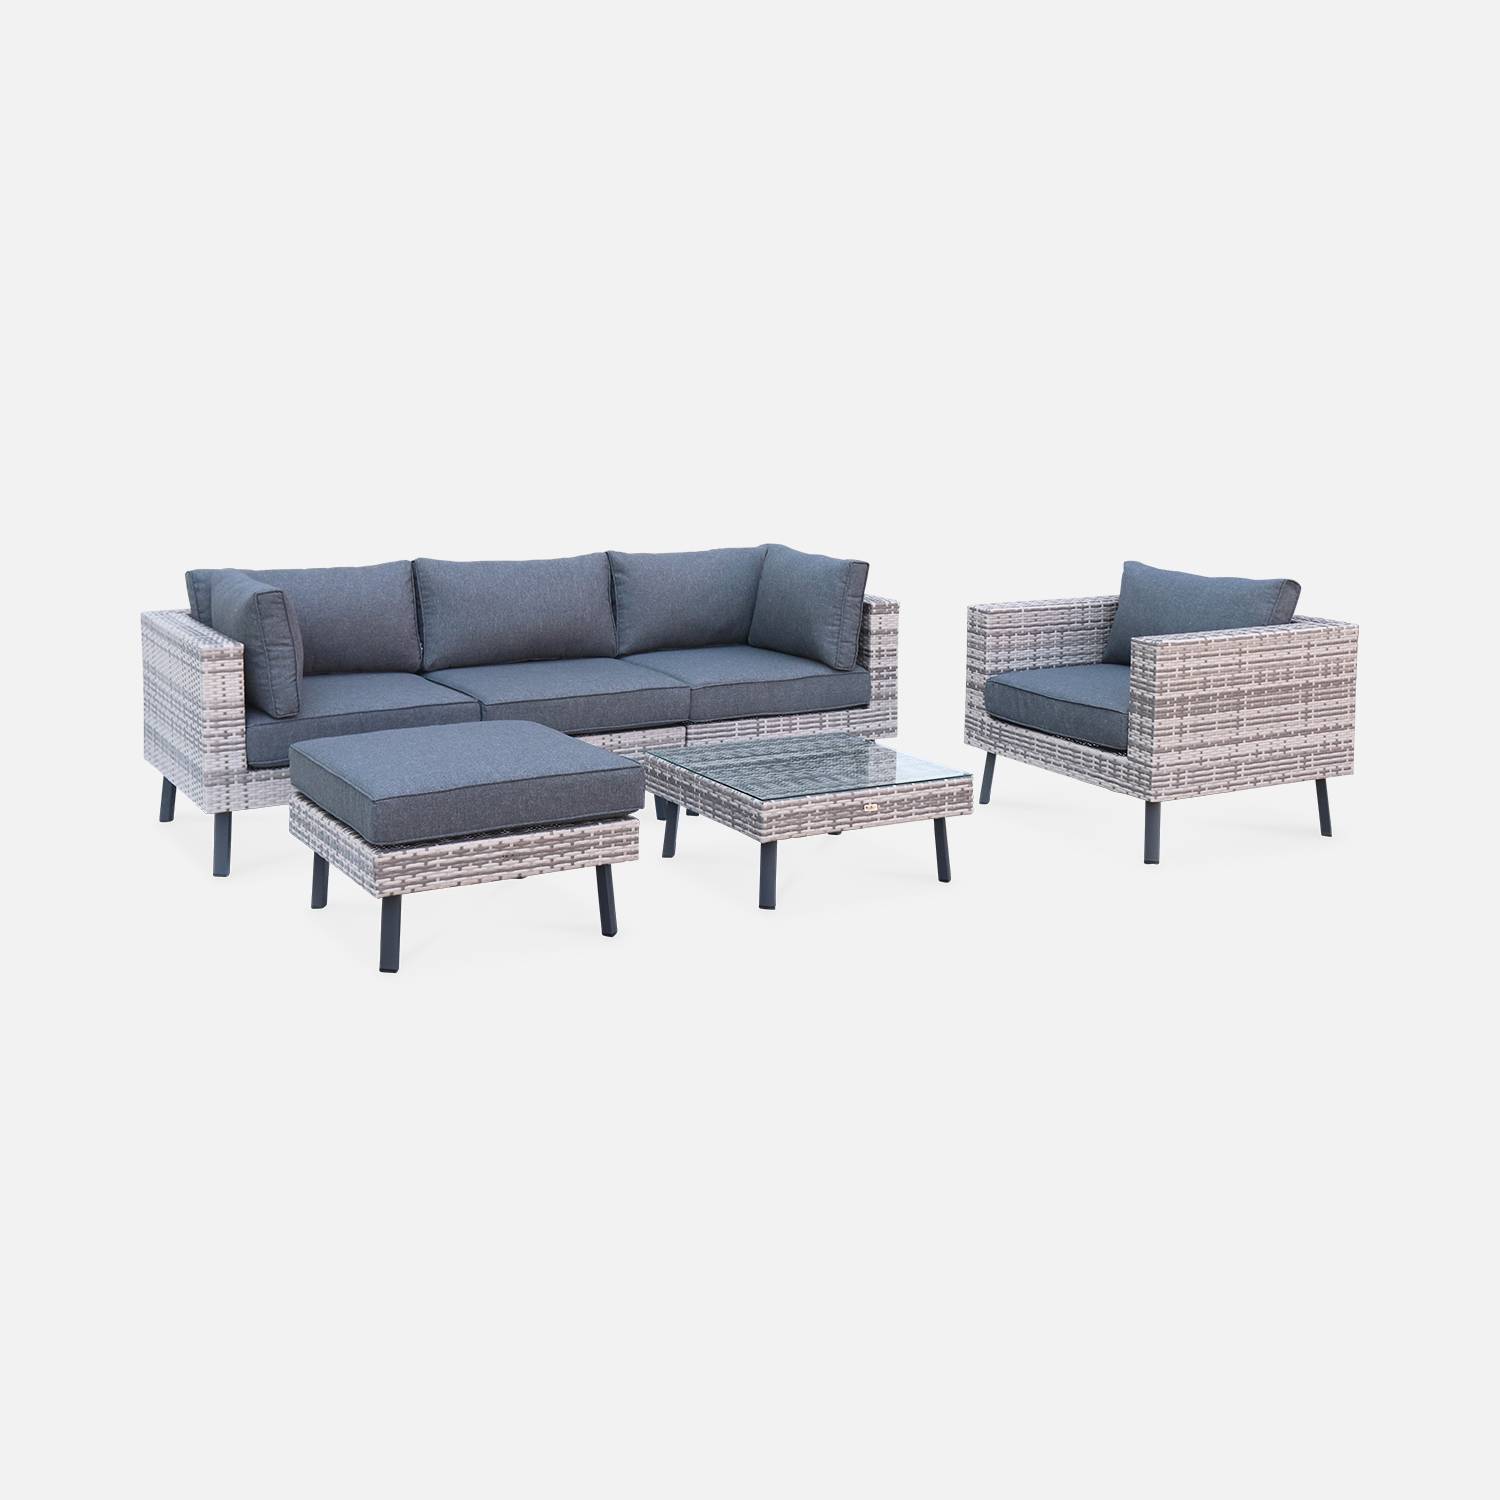 Conjunto de muebles de jardín de 5 plazas en resina tejida plana - Alba - tonos de gris y cojines gris oscuro Photo1